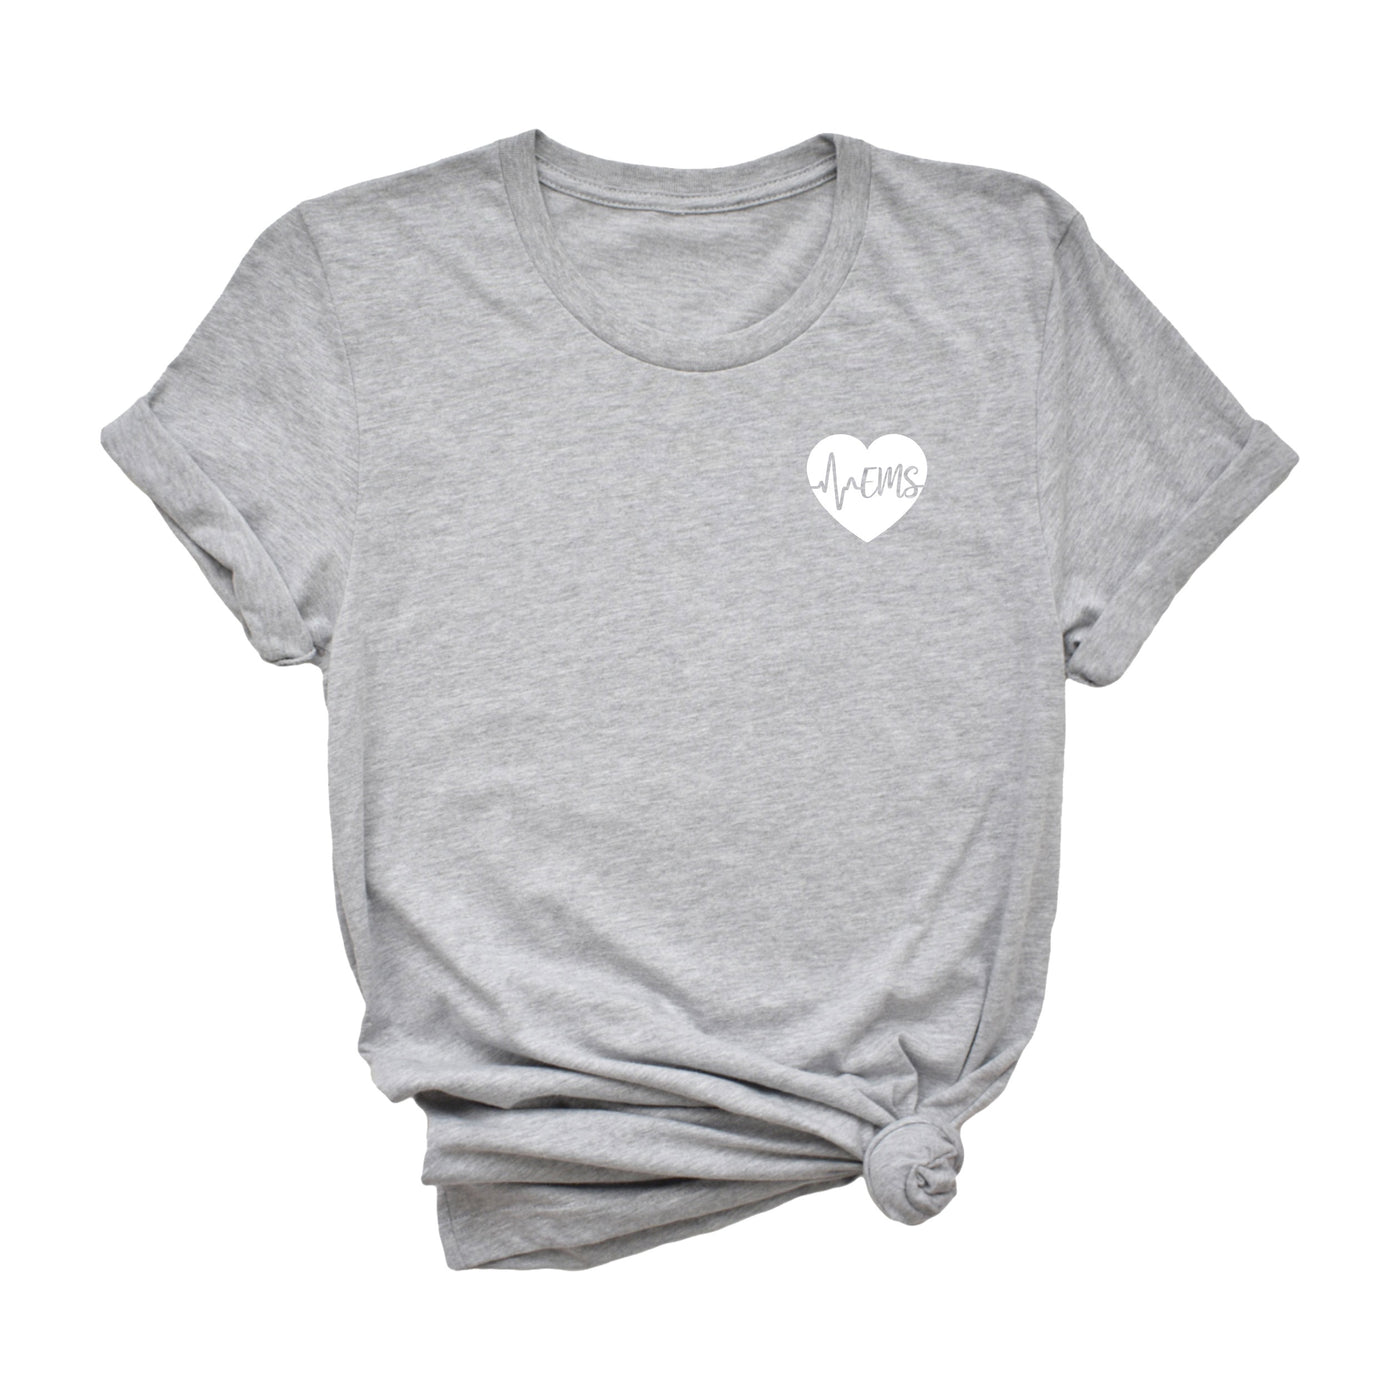 EMS ECG Heart - Shirt